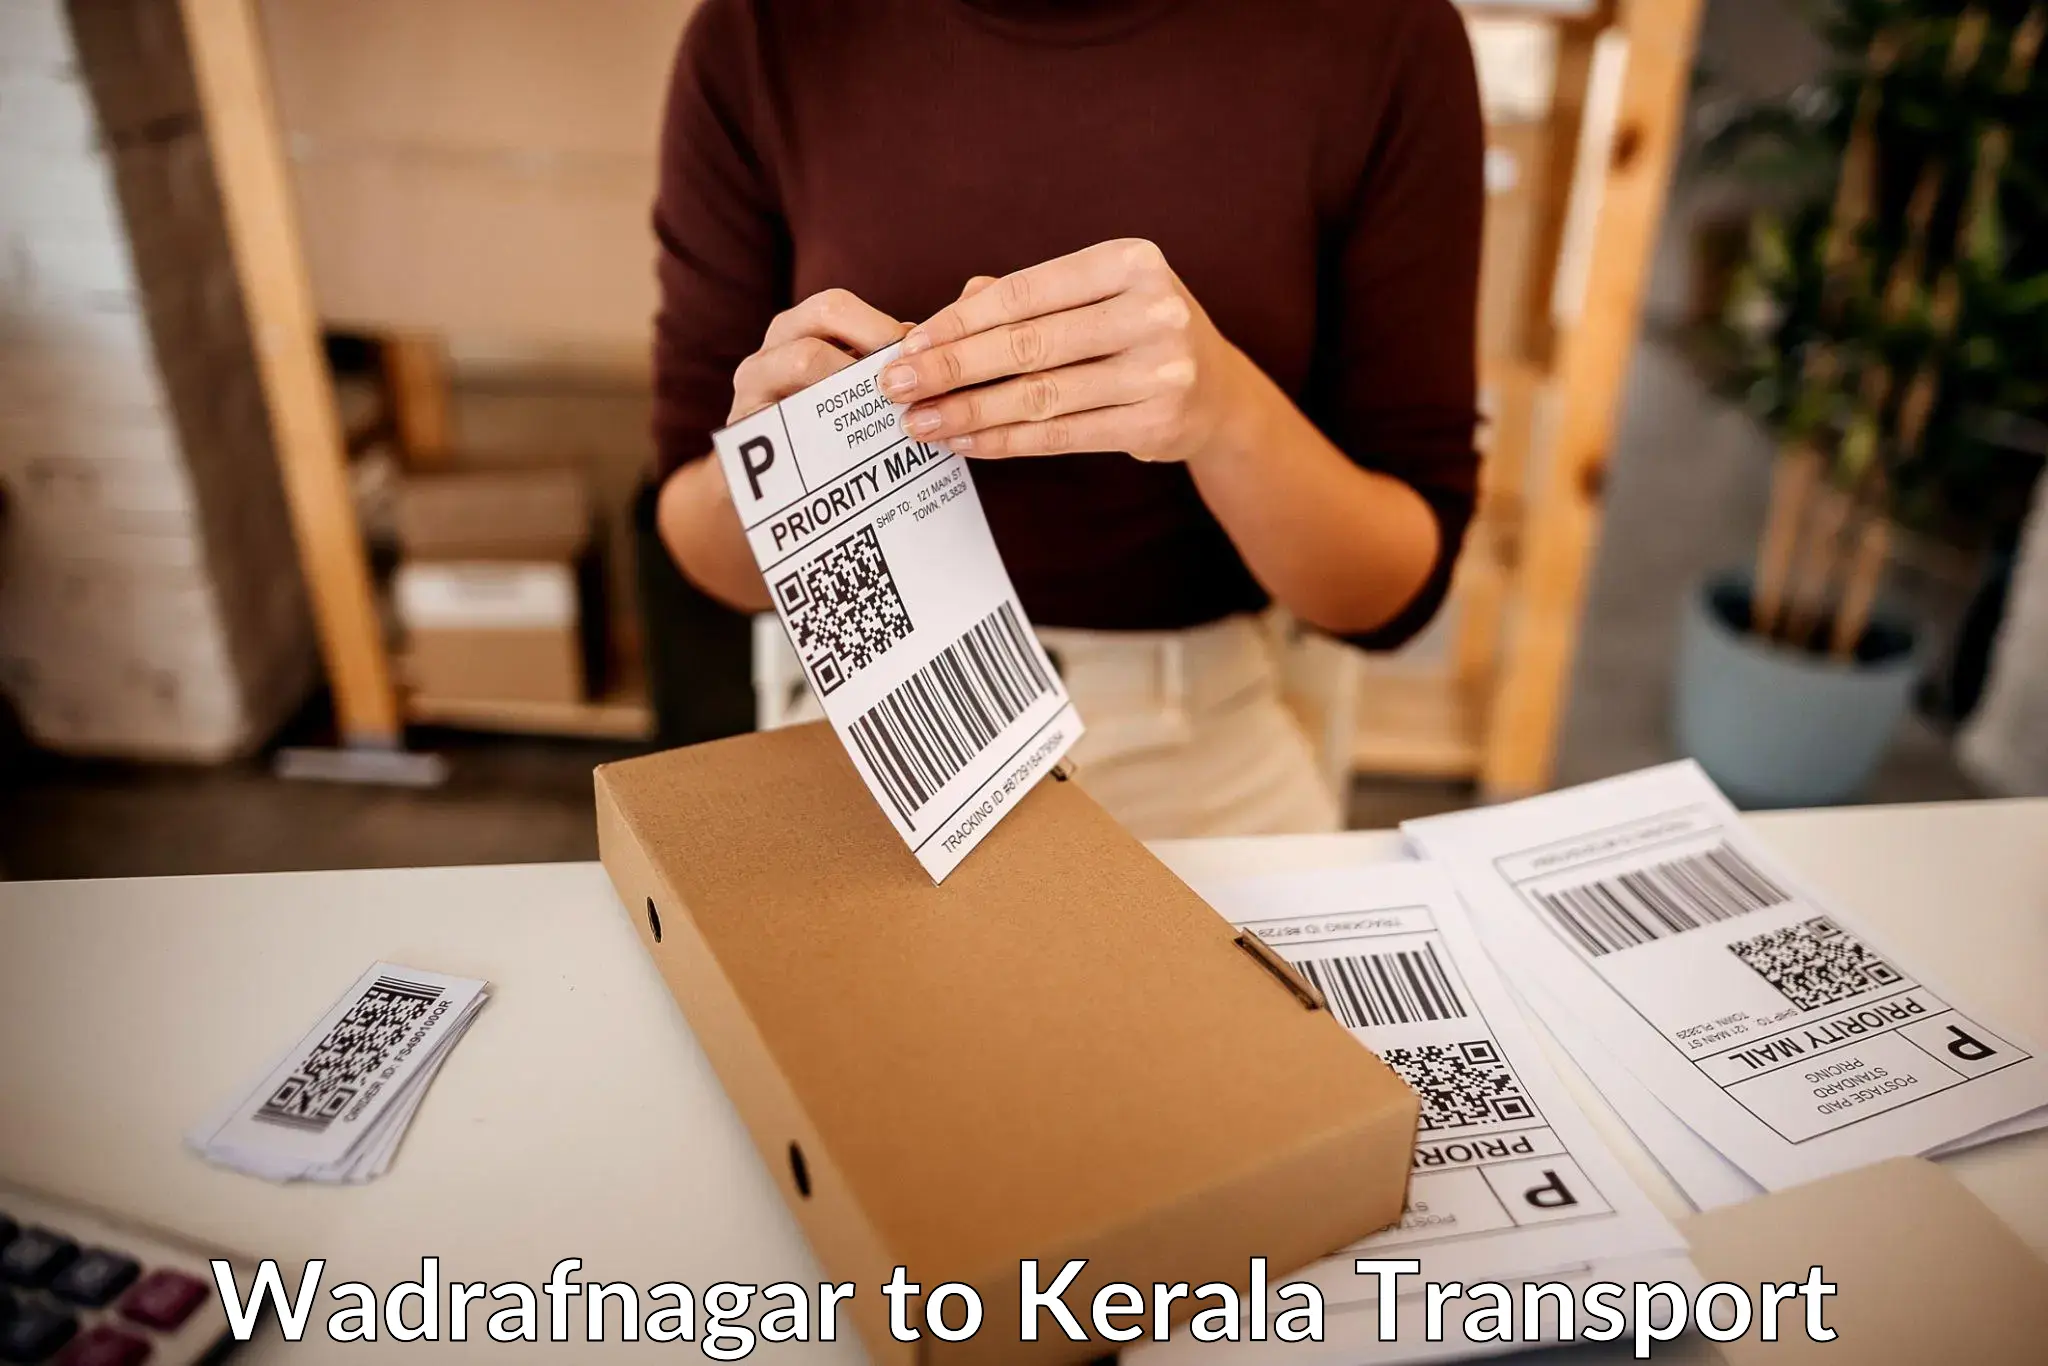 Goods delivery service Wadrafnagar to Kondotty